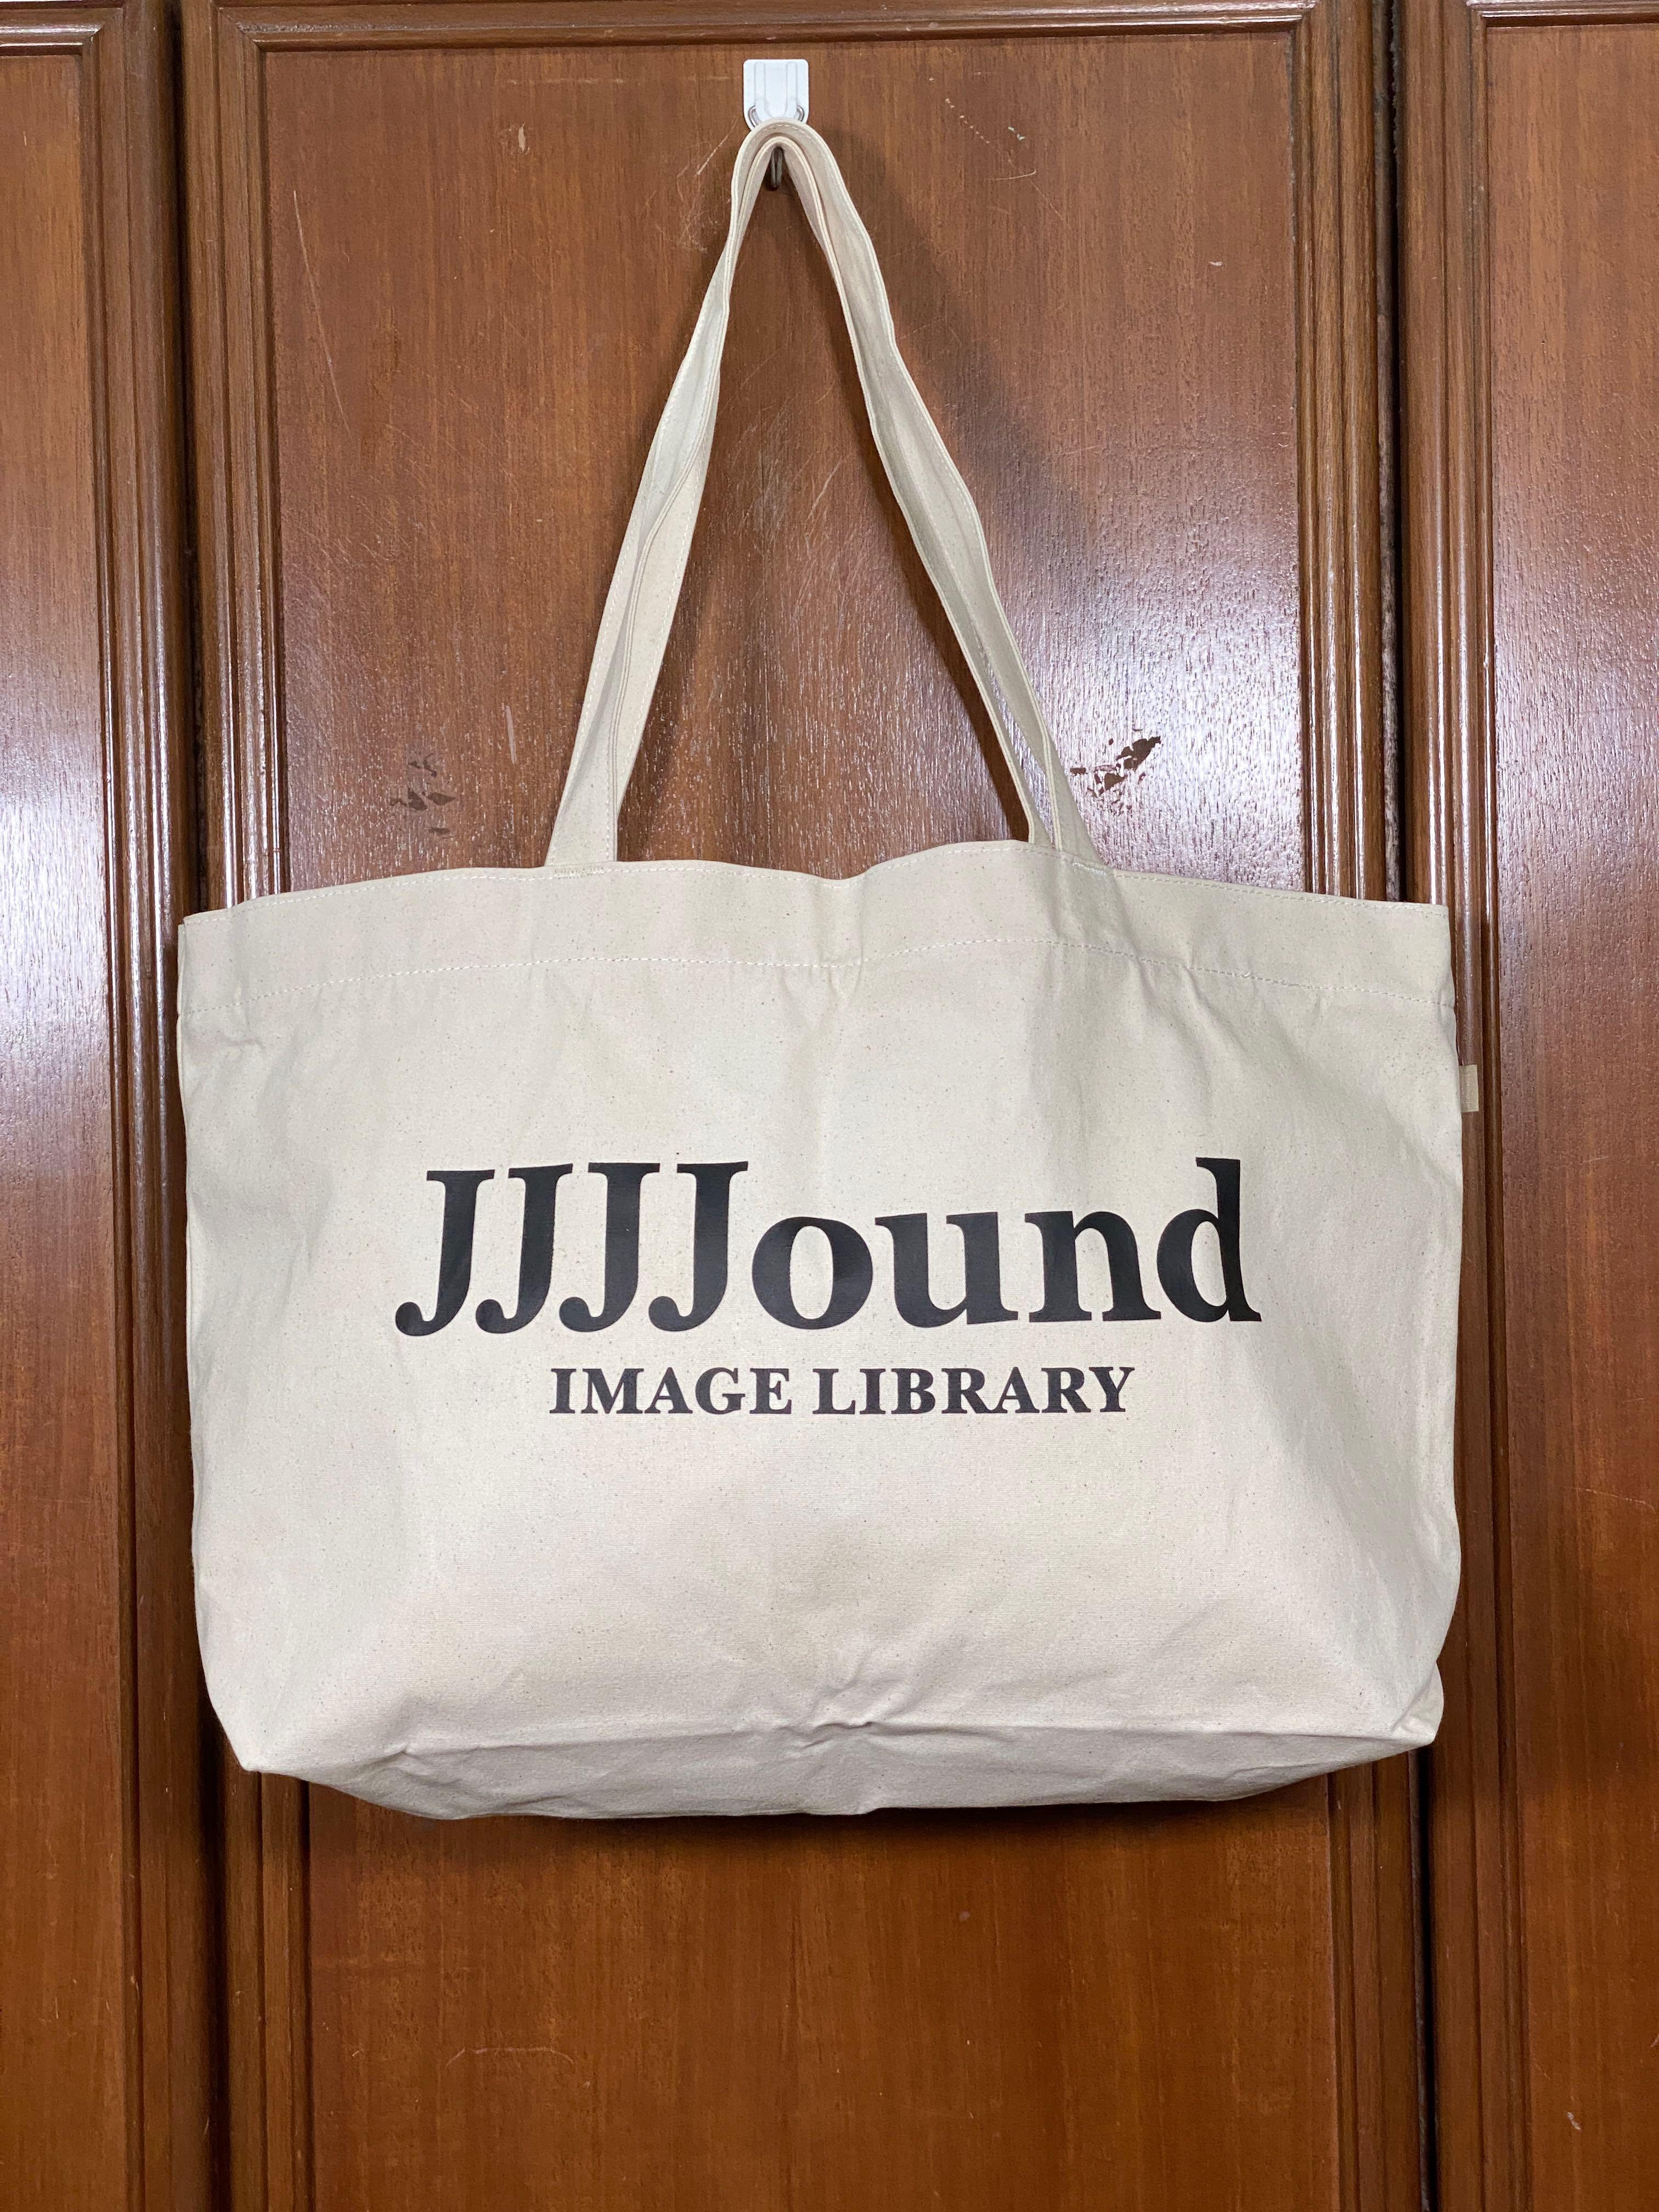 jjjjound JJJJ Library Promo Tote Large - トートバッグ